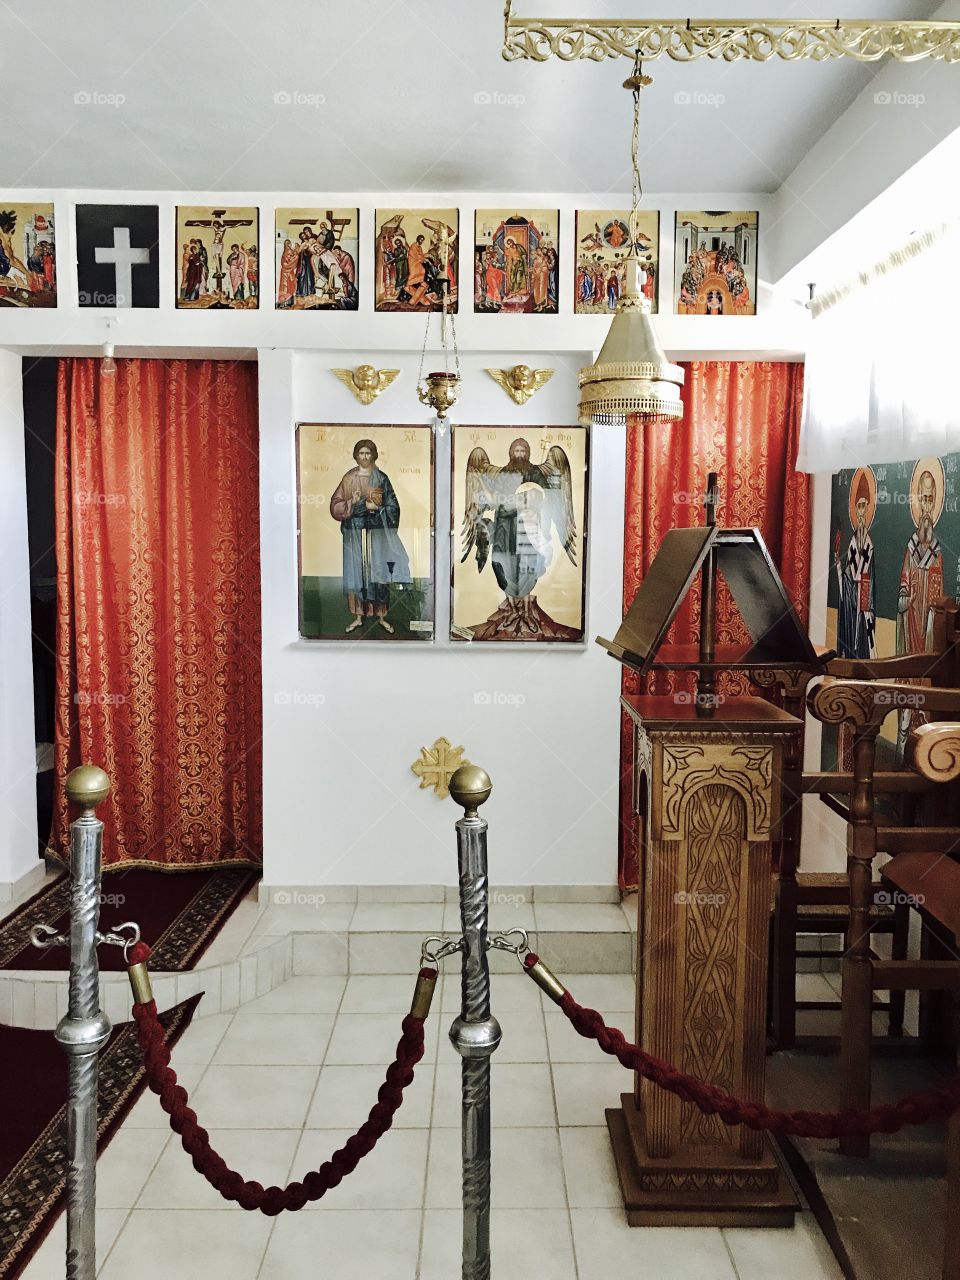 Orthodox Church 